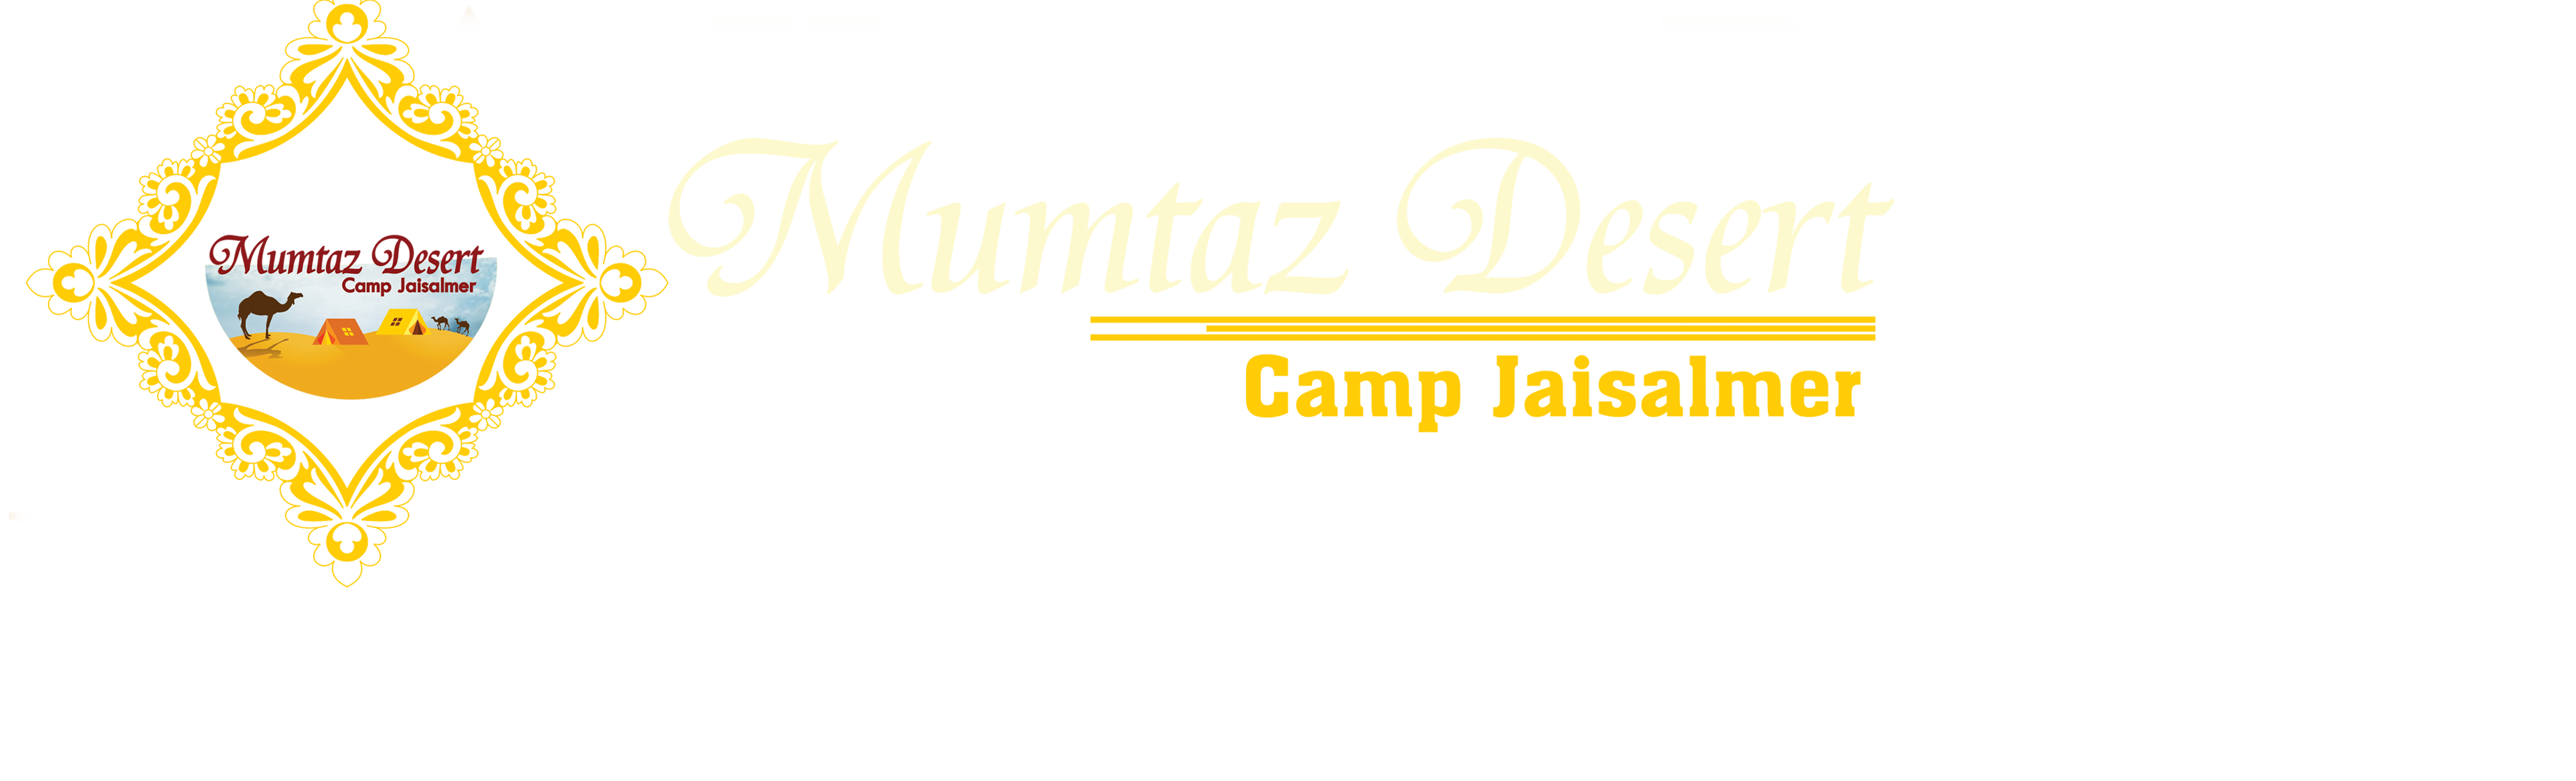 Mumtaz Desert Camp